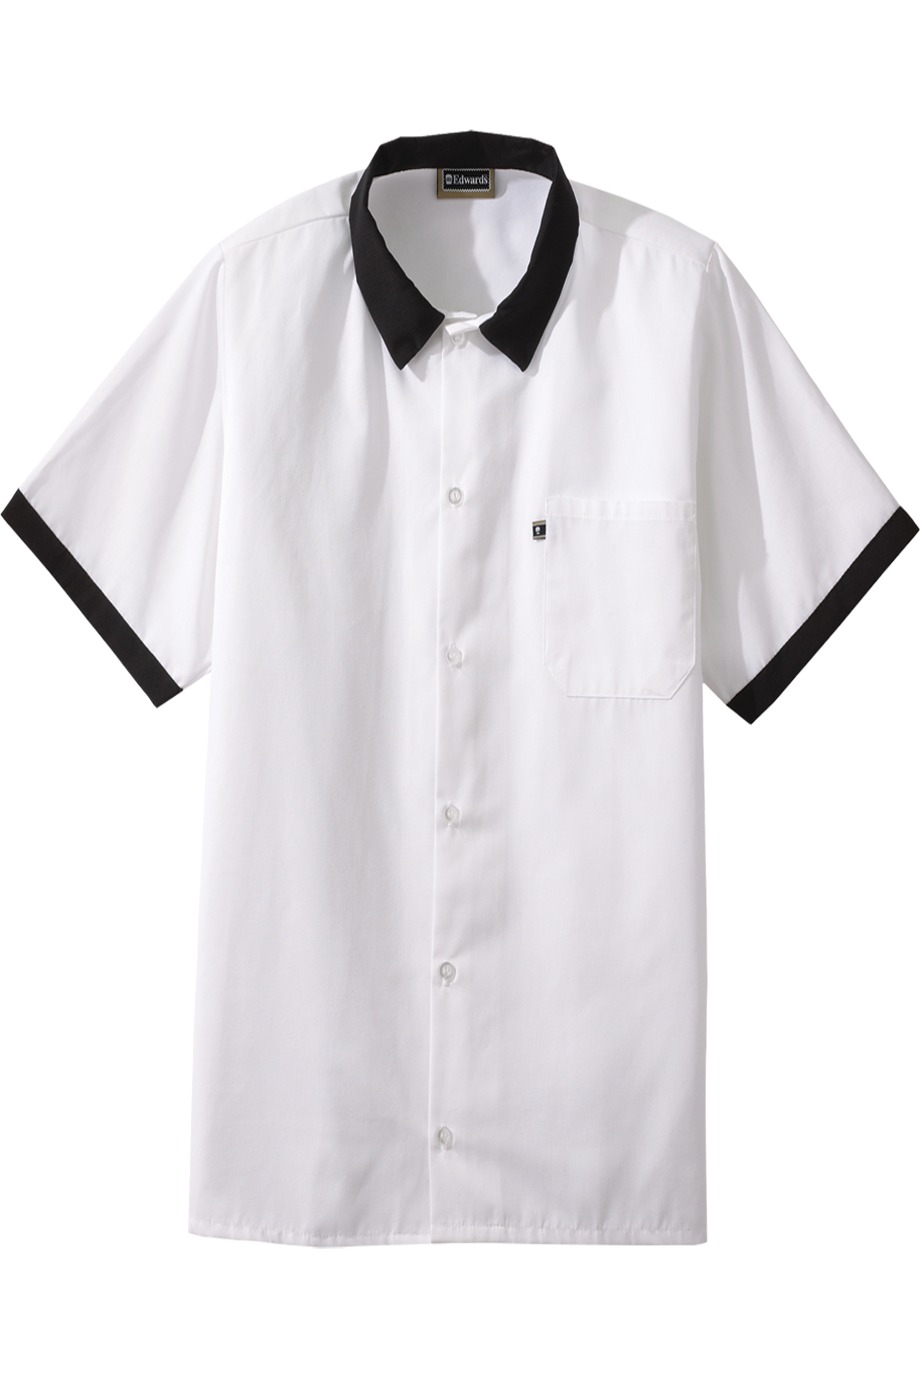 Edwards Garment 1304 - Cook Shirt